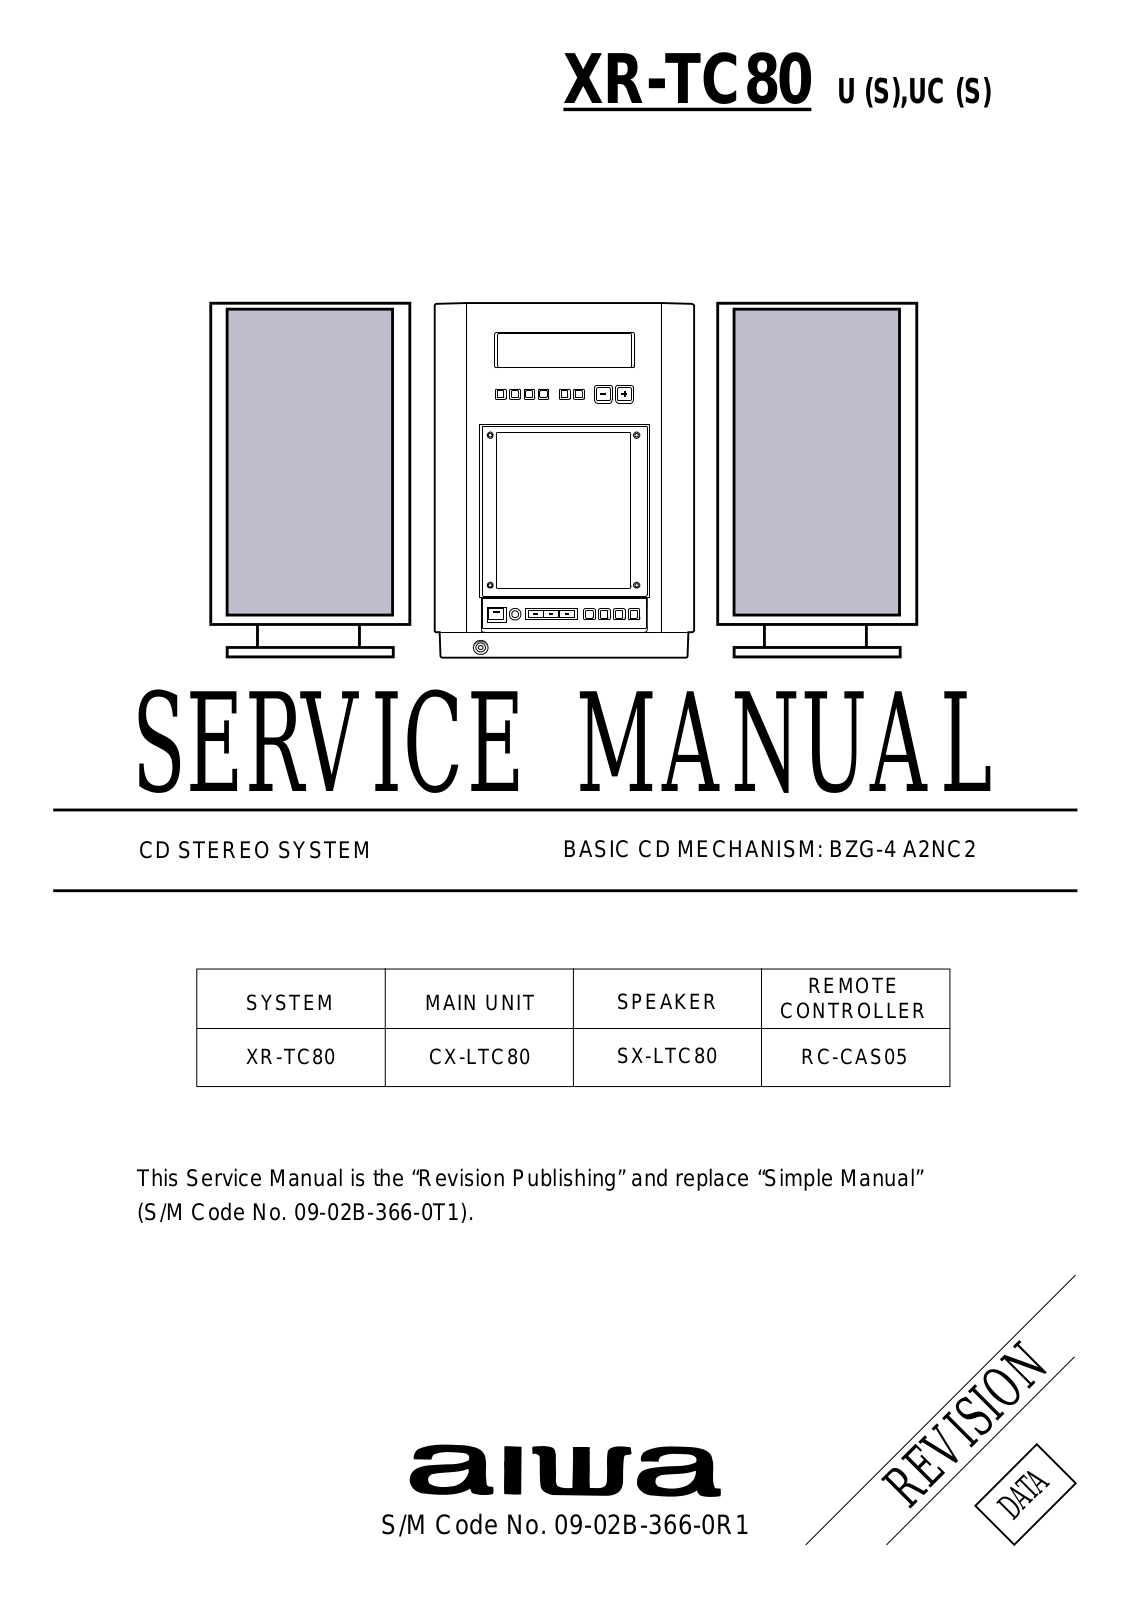 Aiwa XR TC80 Service Manual